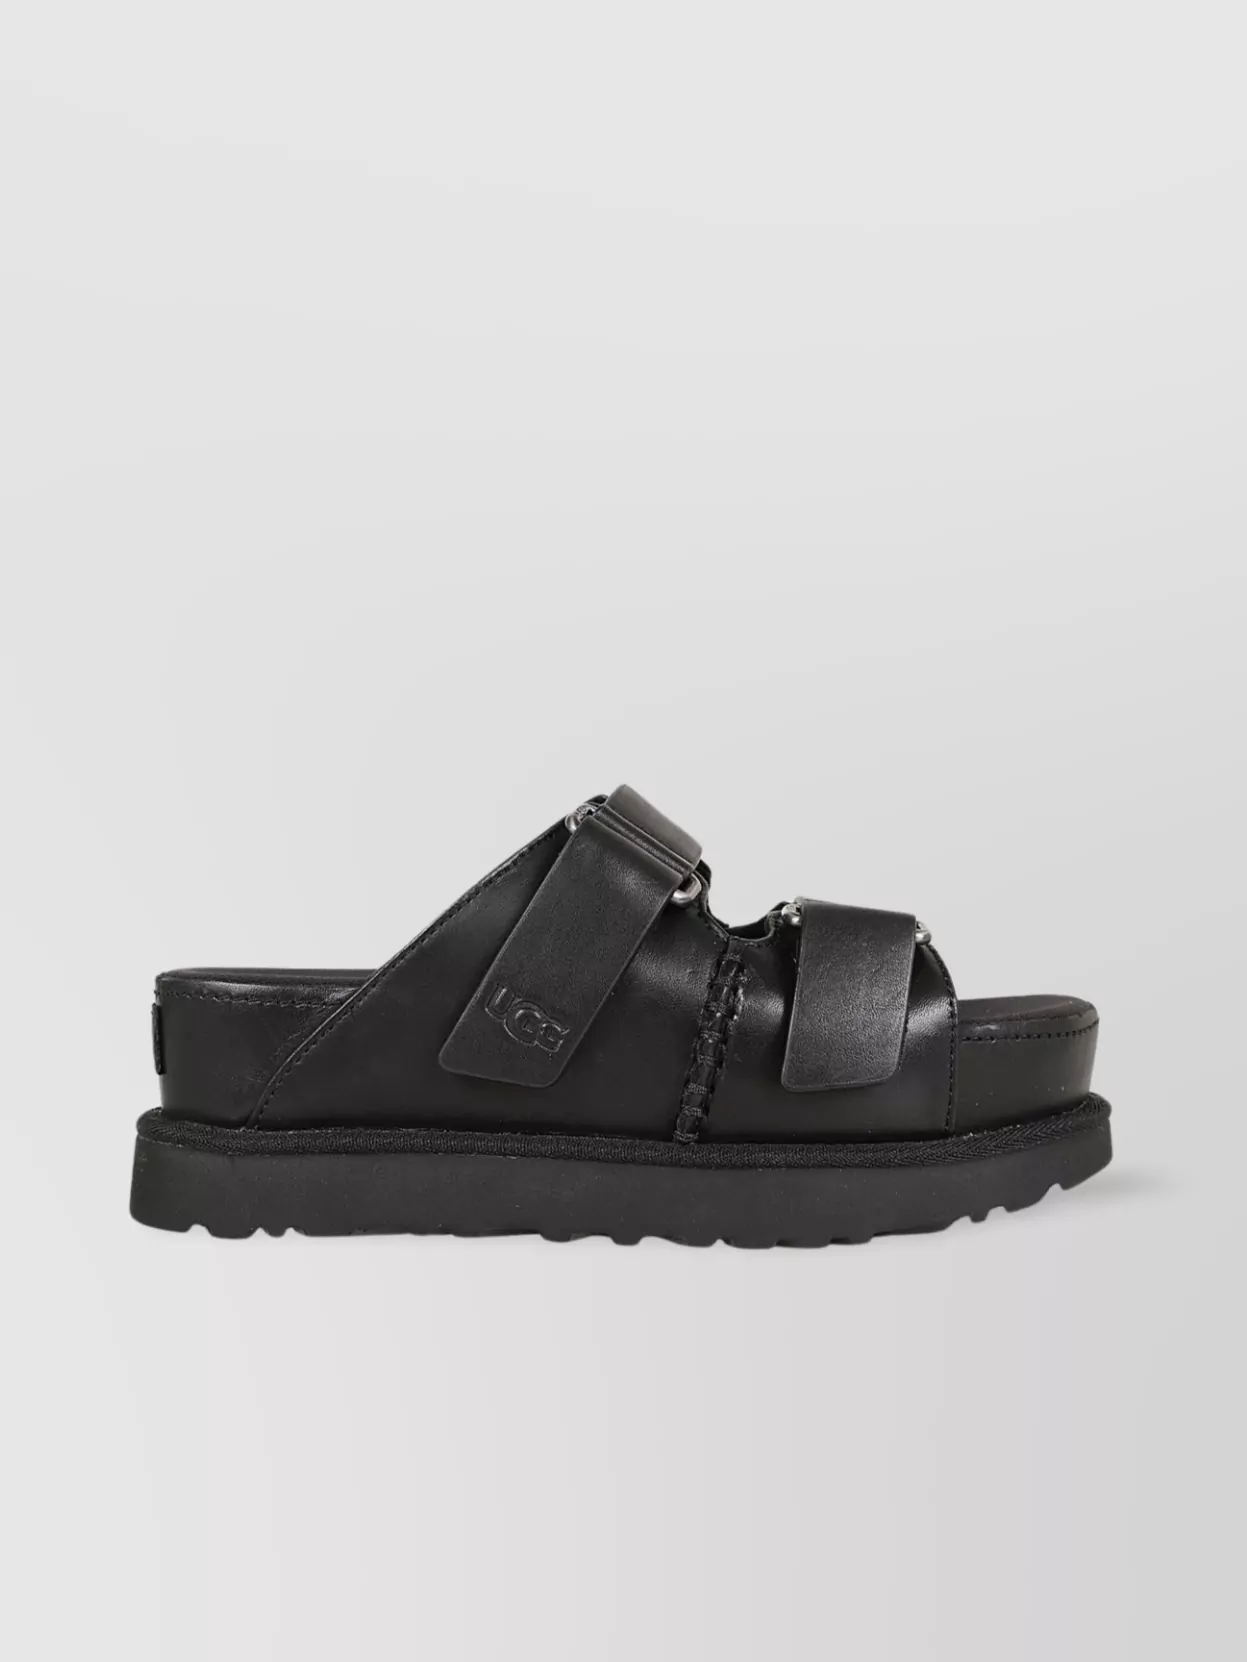 Shop Ugg Slide Sandals With Buckle And Platform Sole